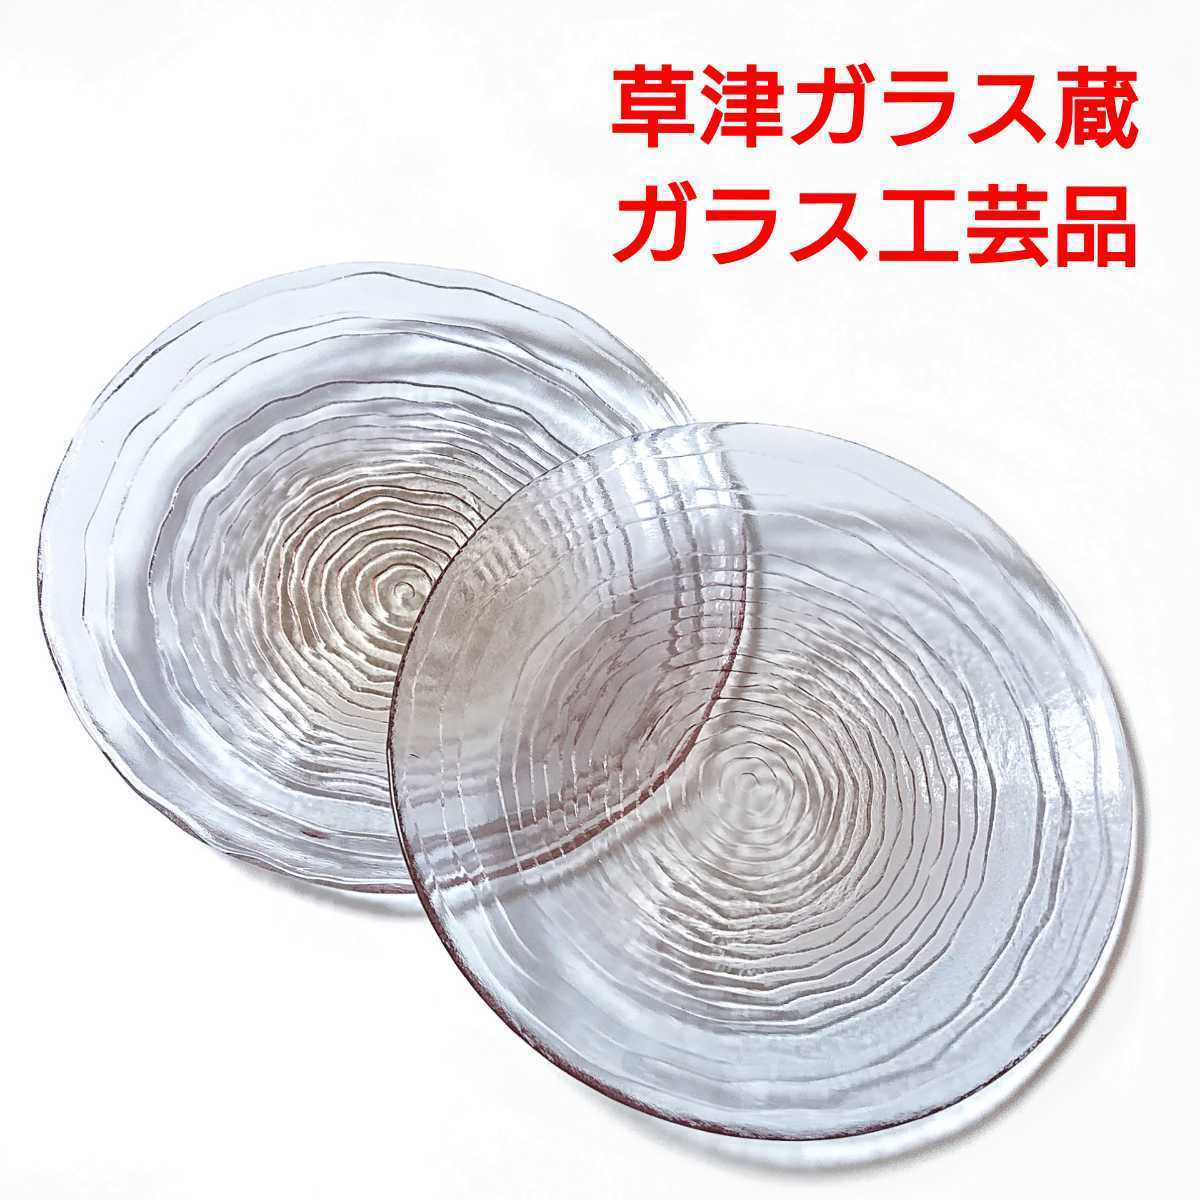 Kusatsu Onsen/Kusatsu Glaslager/Glashandwerk/Glasplatte/Handgefertigt/Blau, Geschirr im westlichen Stil, Platte, Gericht, Andere